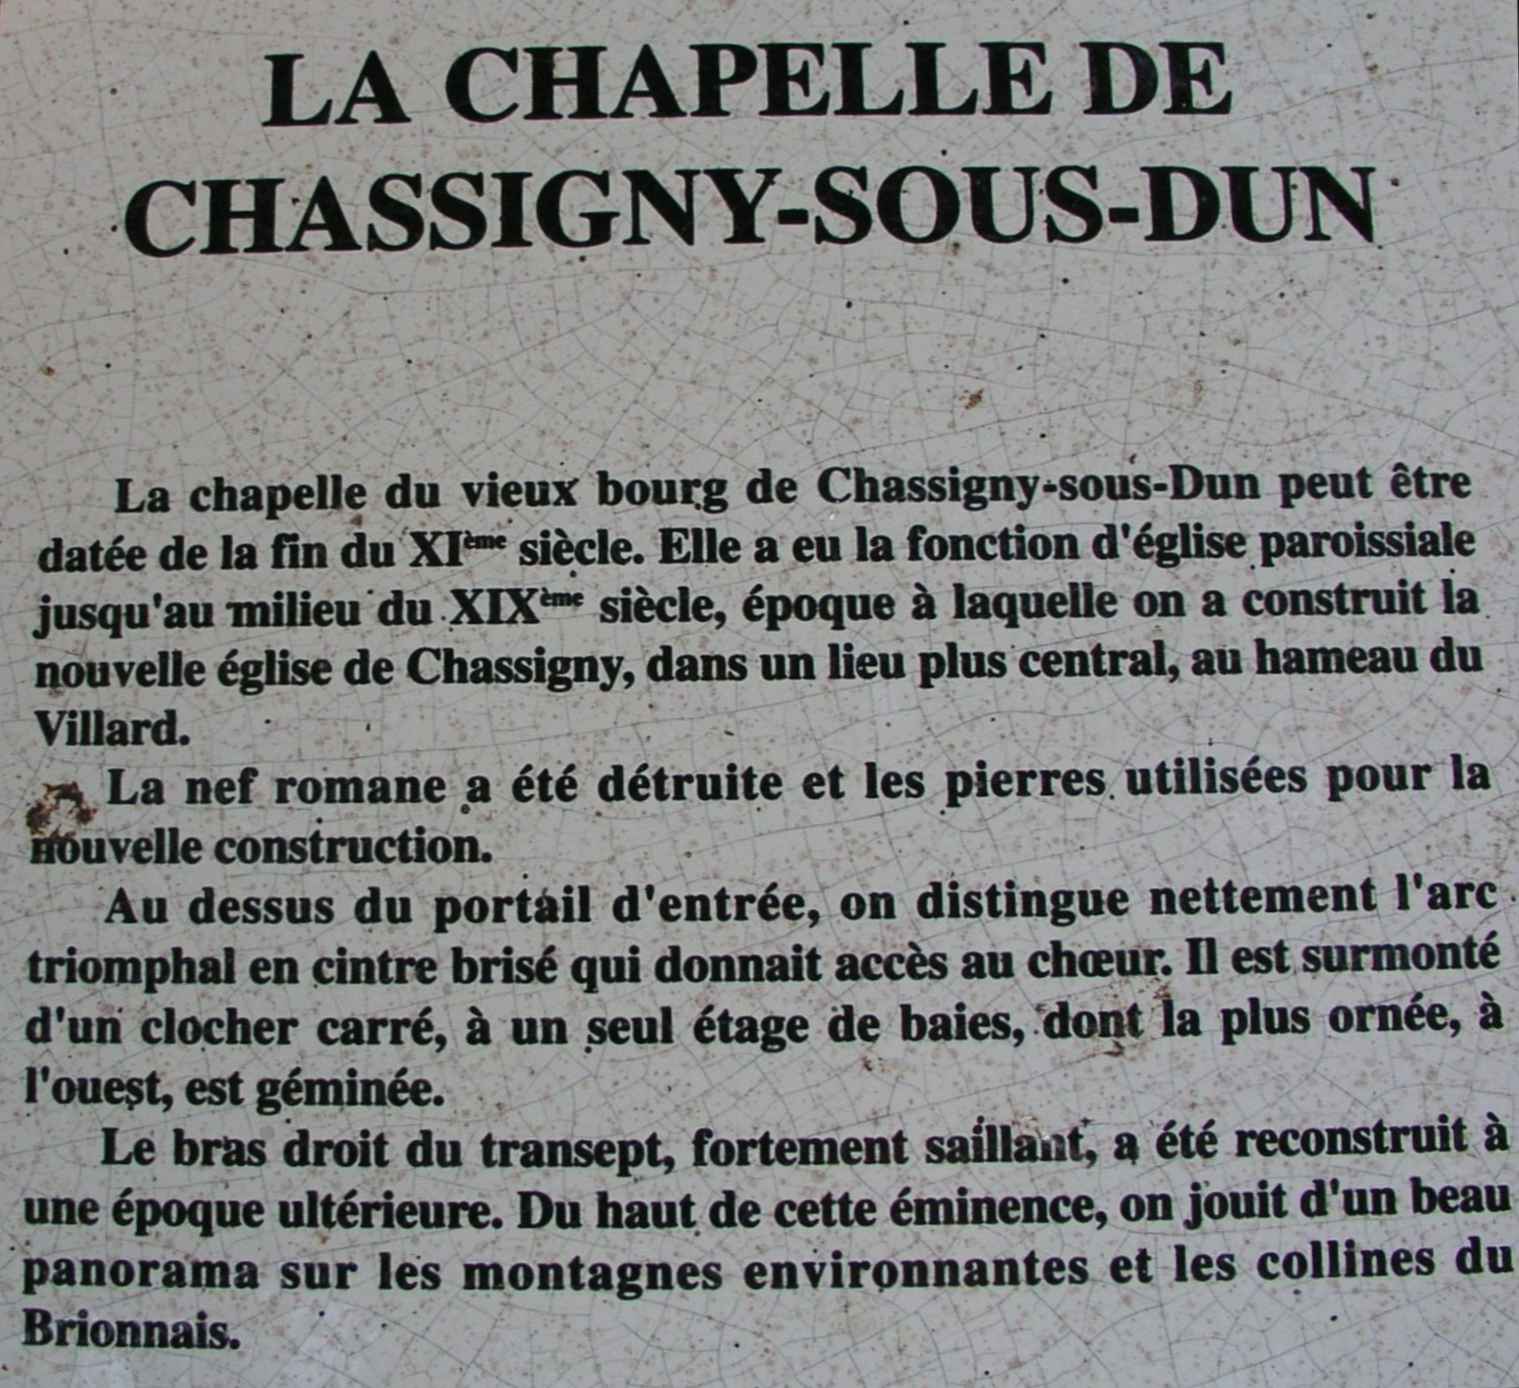 La chapelle romane du Vieux-Bourg de Chassigny-sous-Dun - 1